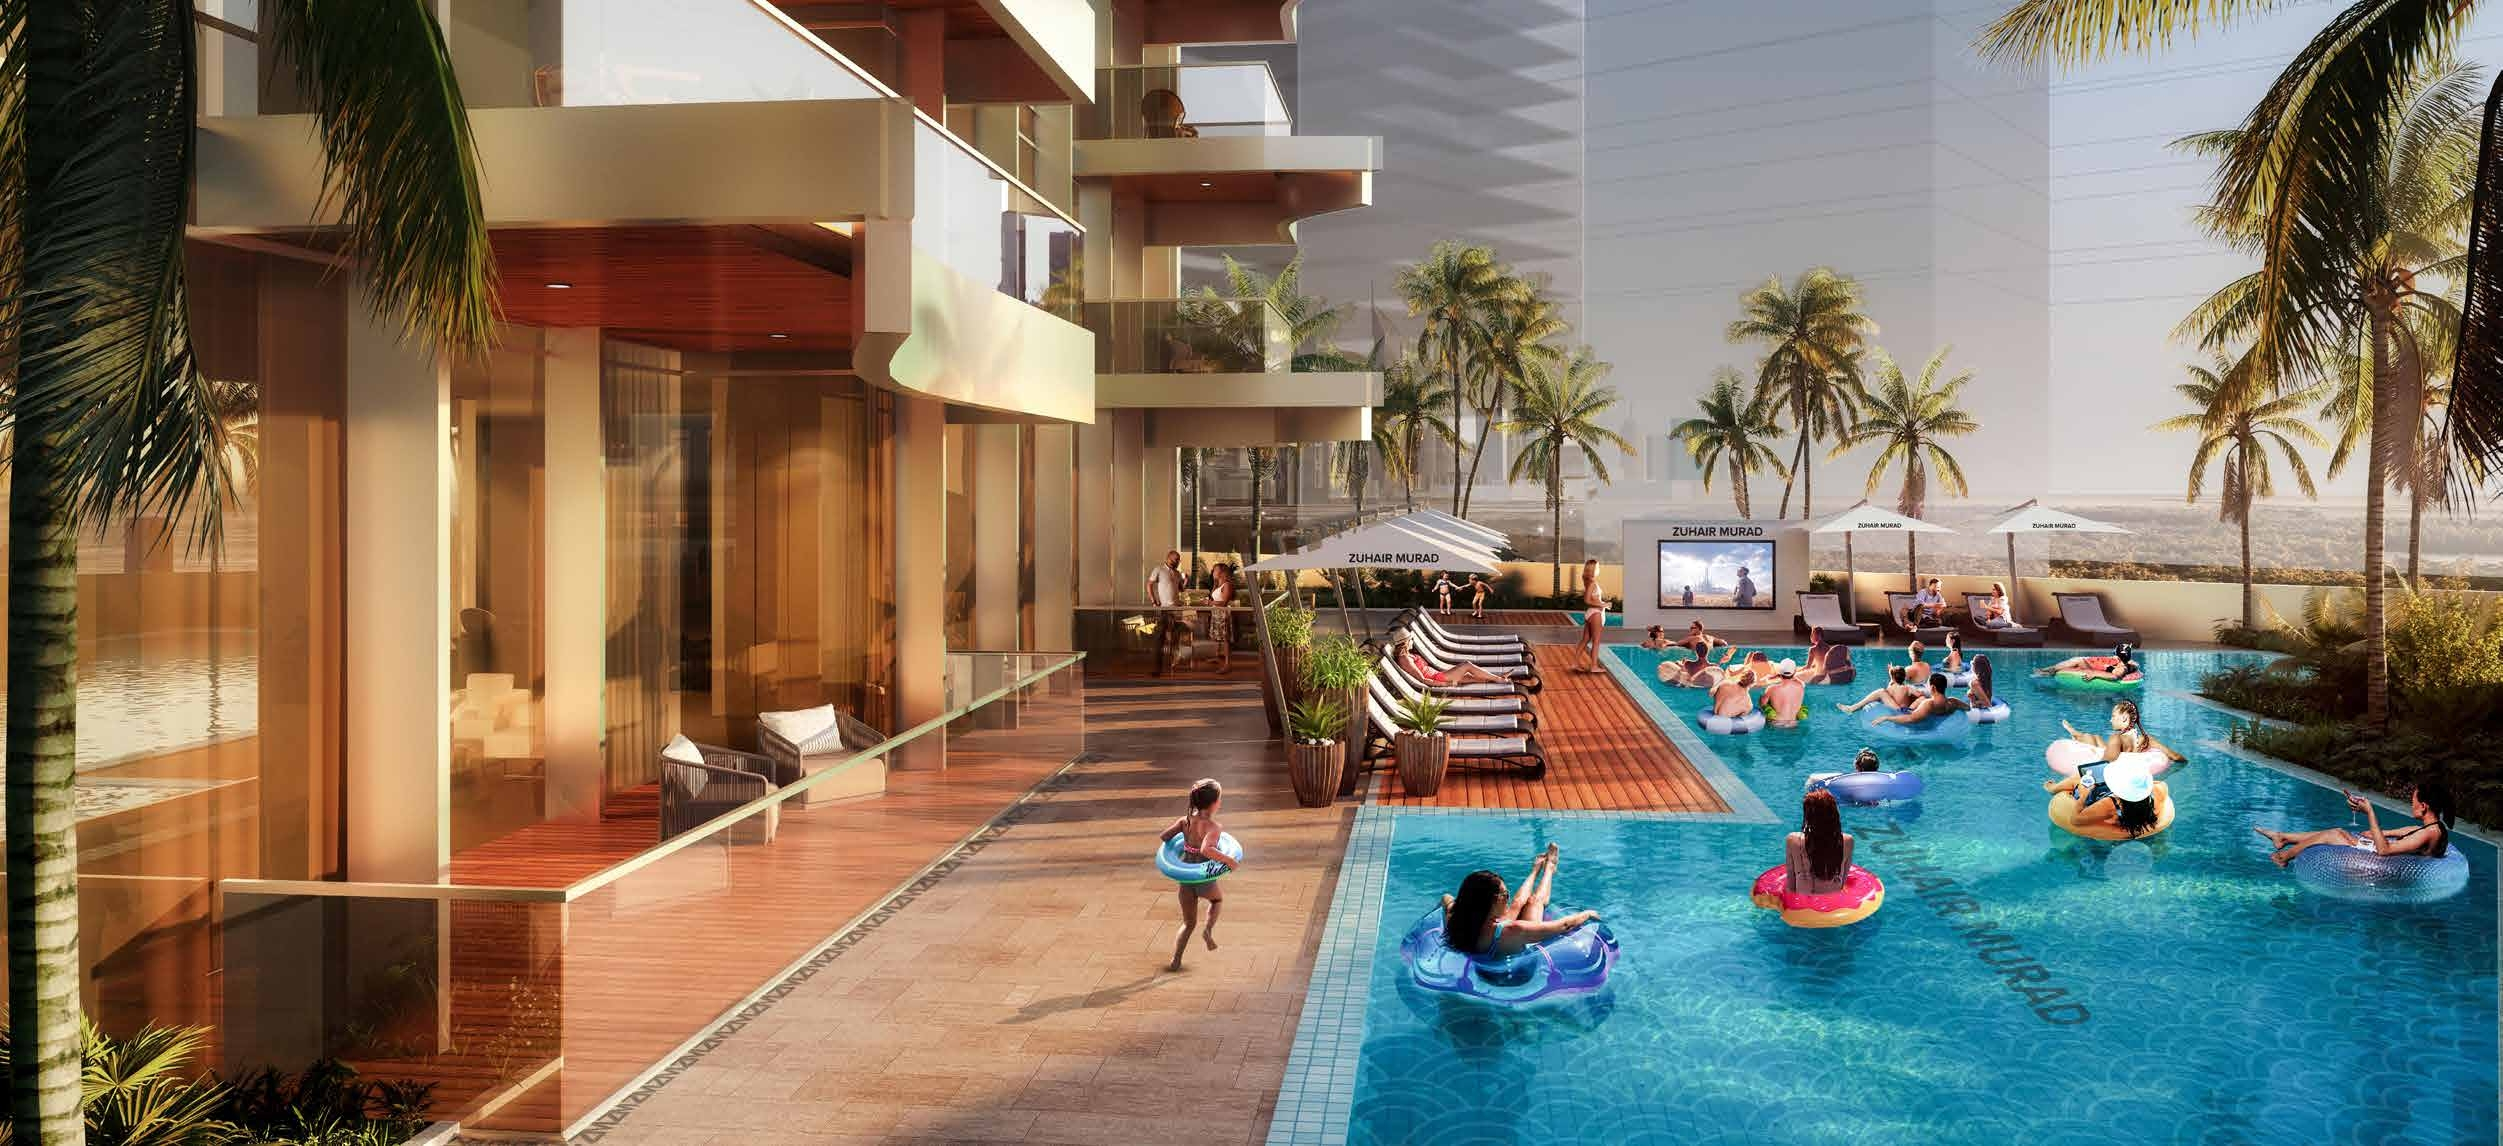 Elegant Luxury Residences in Dubai Slide Image 5